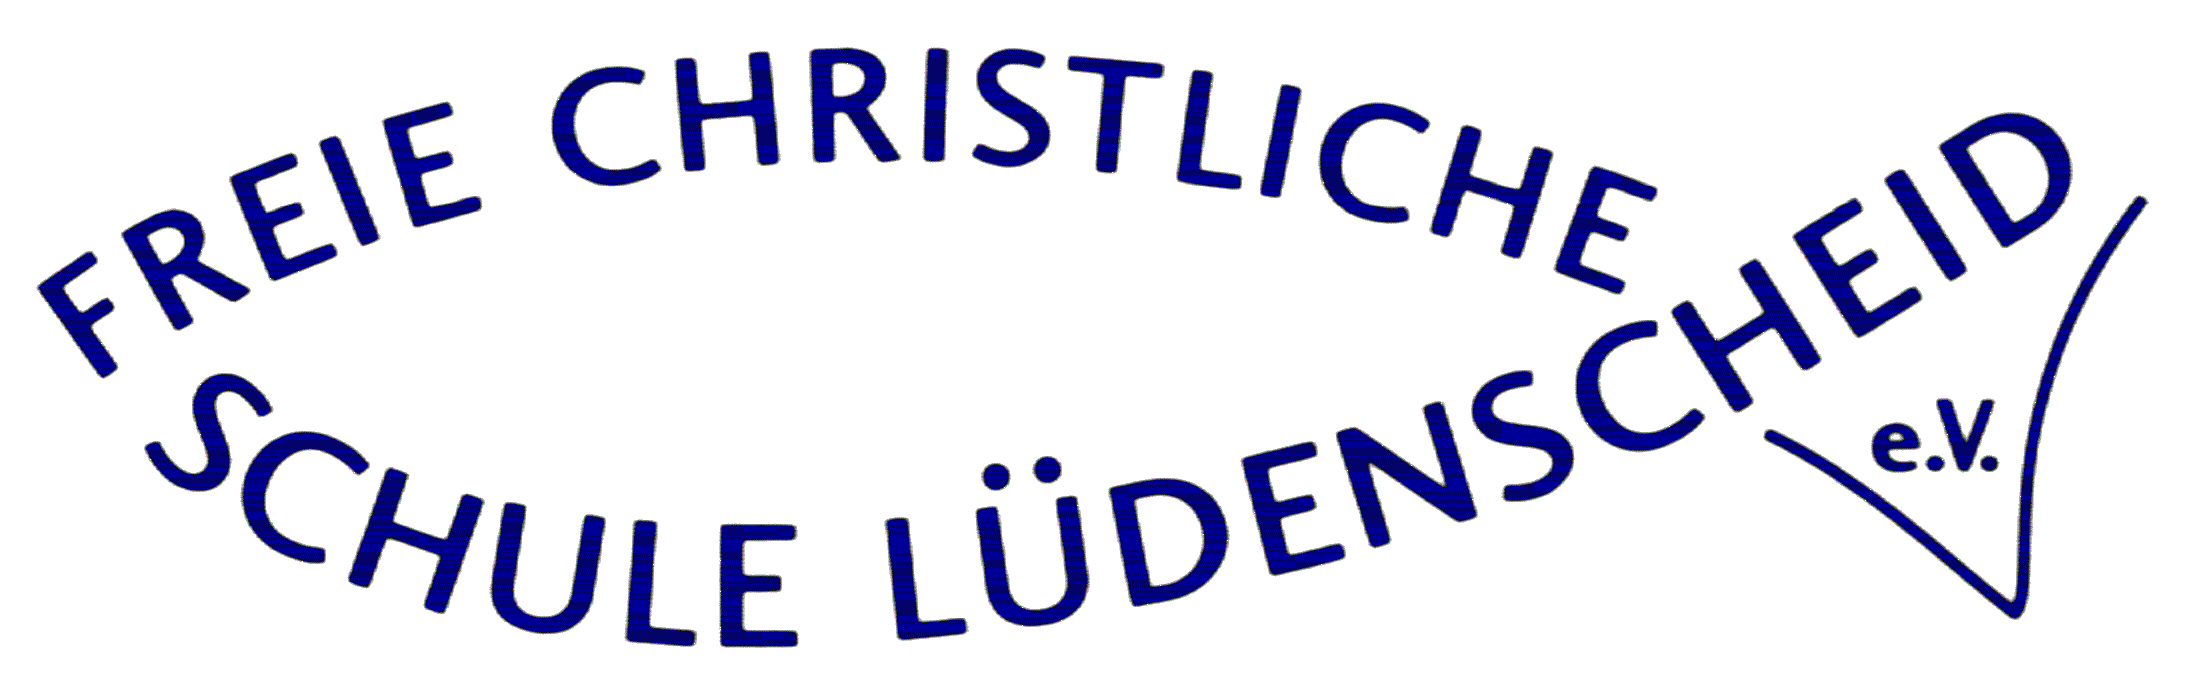 Freie Christliche Realschule Lüdenscheid